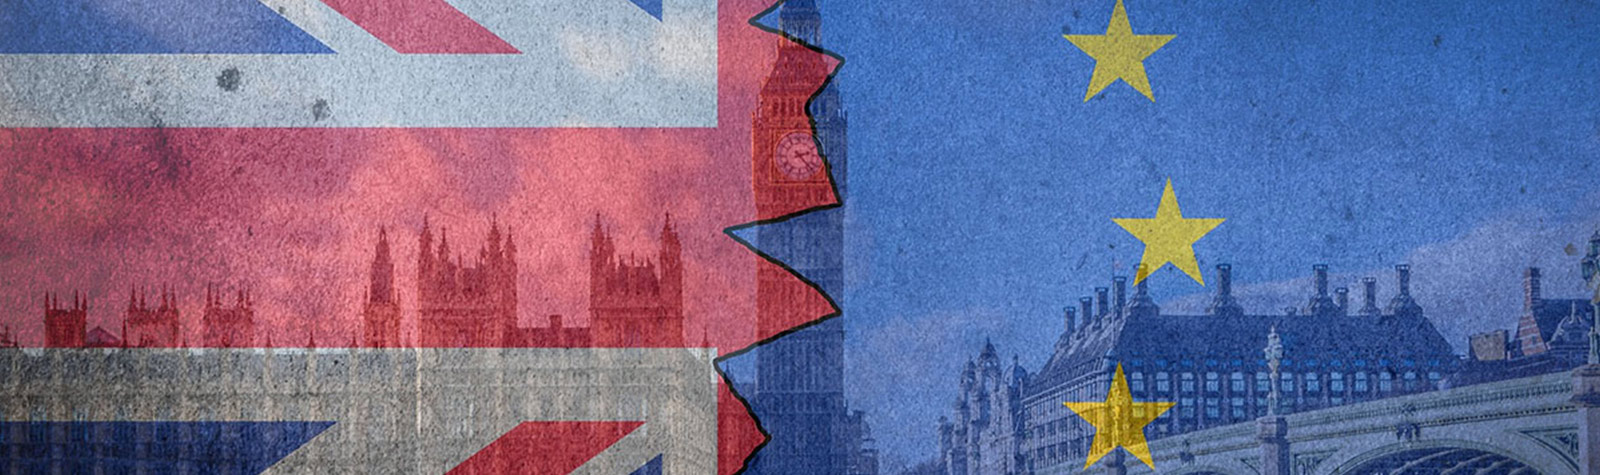 Brexit spedizioni e ecommerce – come spedire nel Regno Unito?